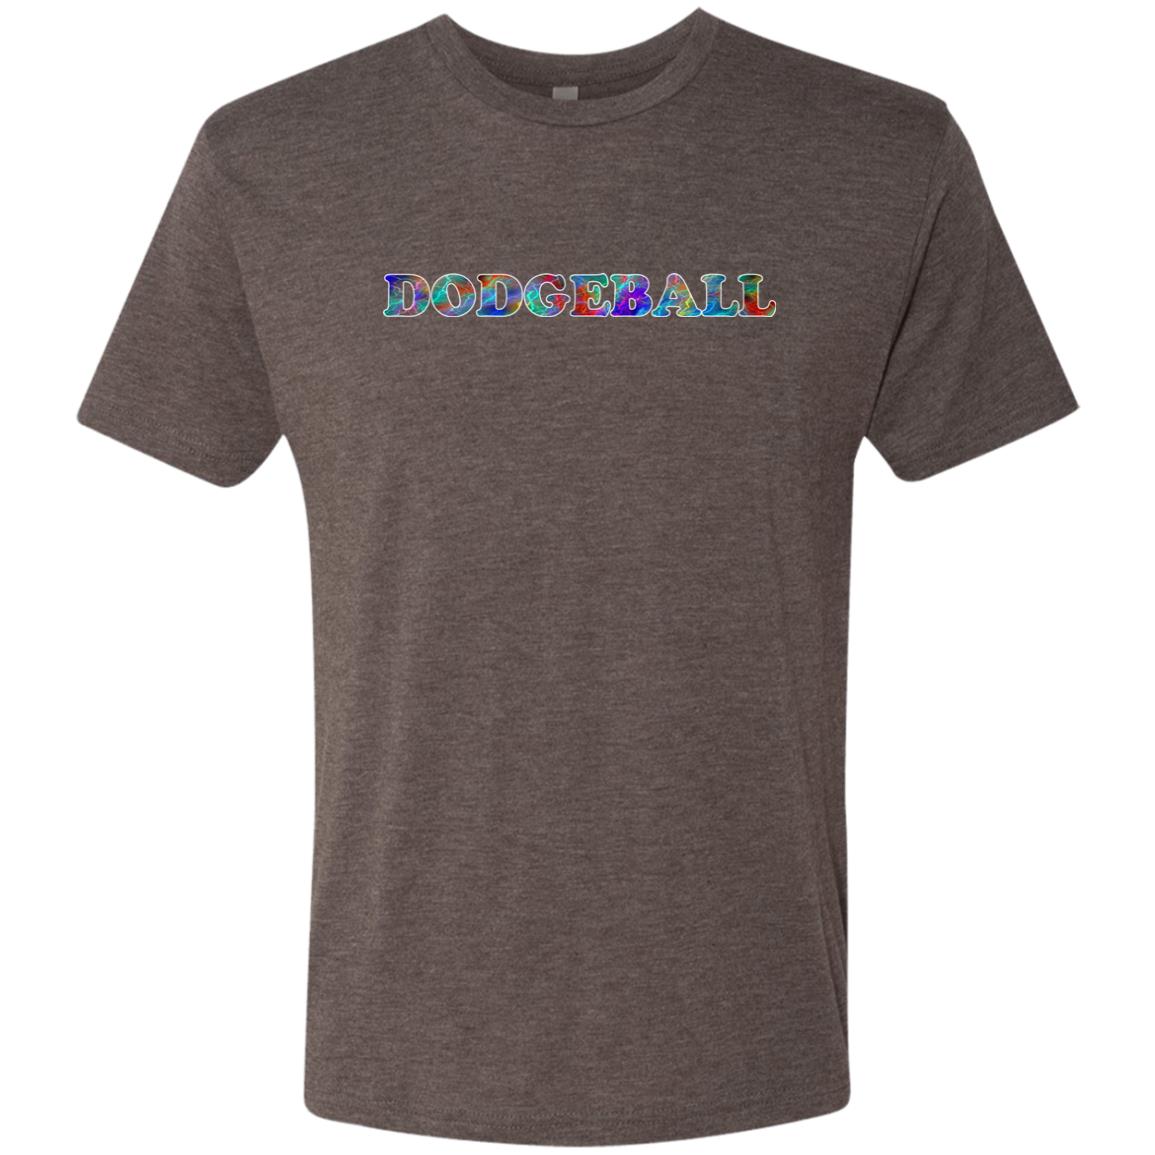 Dodgeball T-Shirt